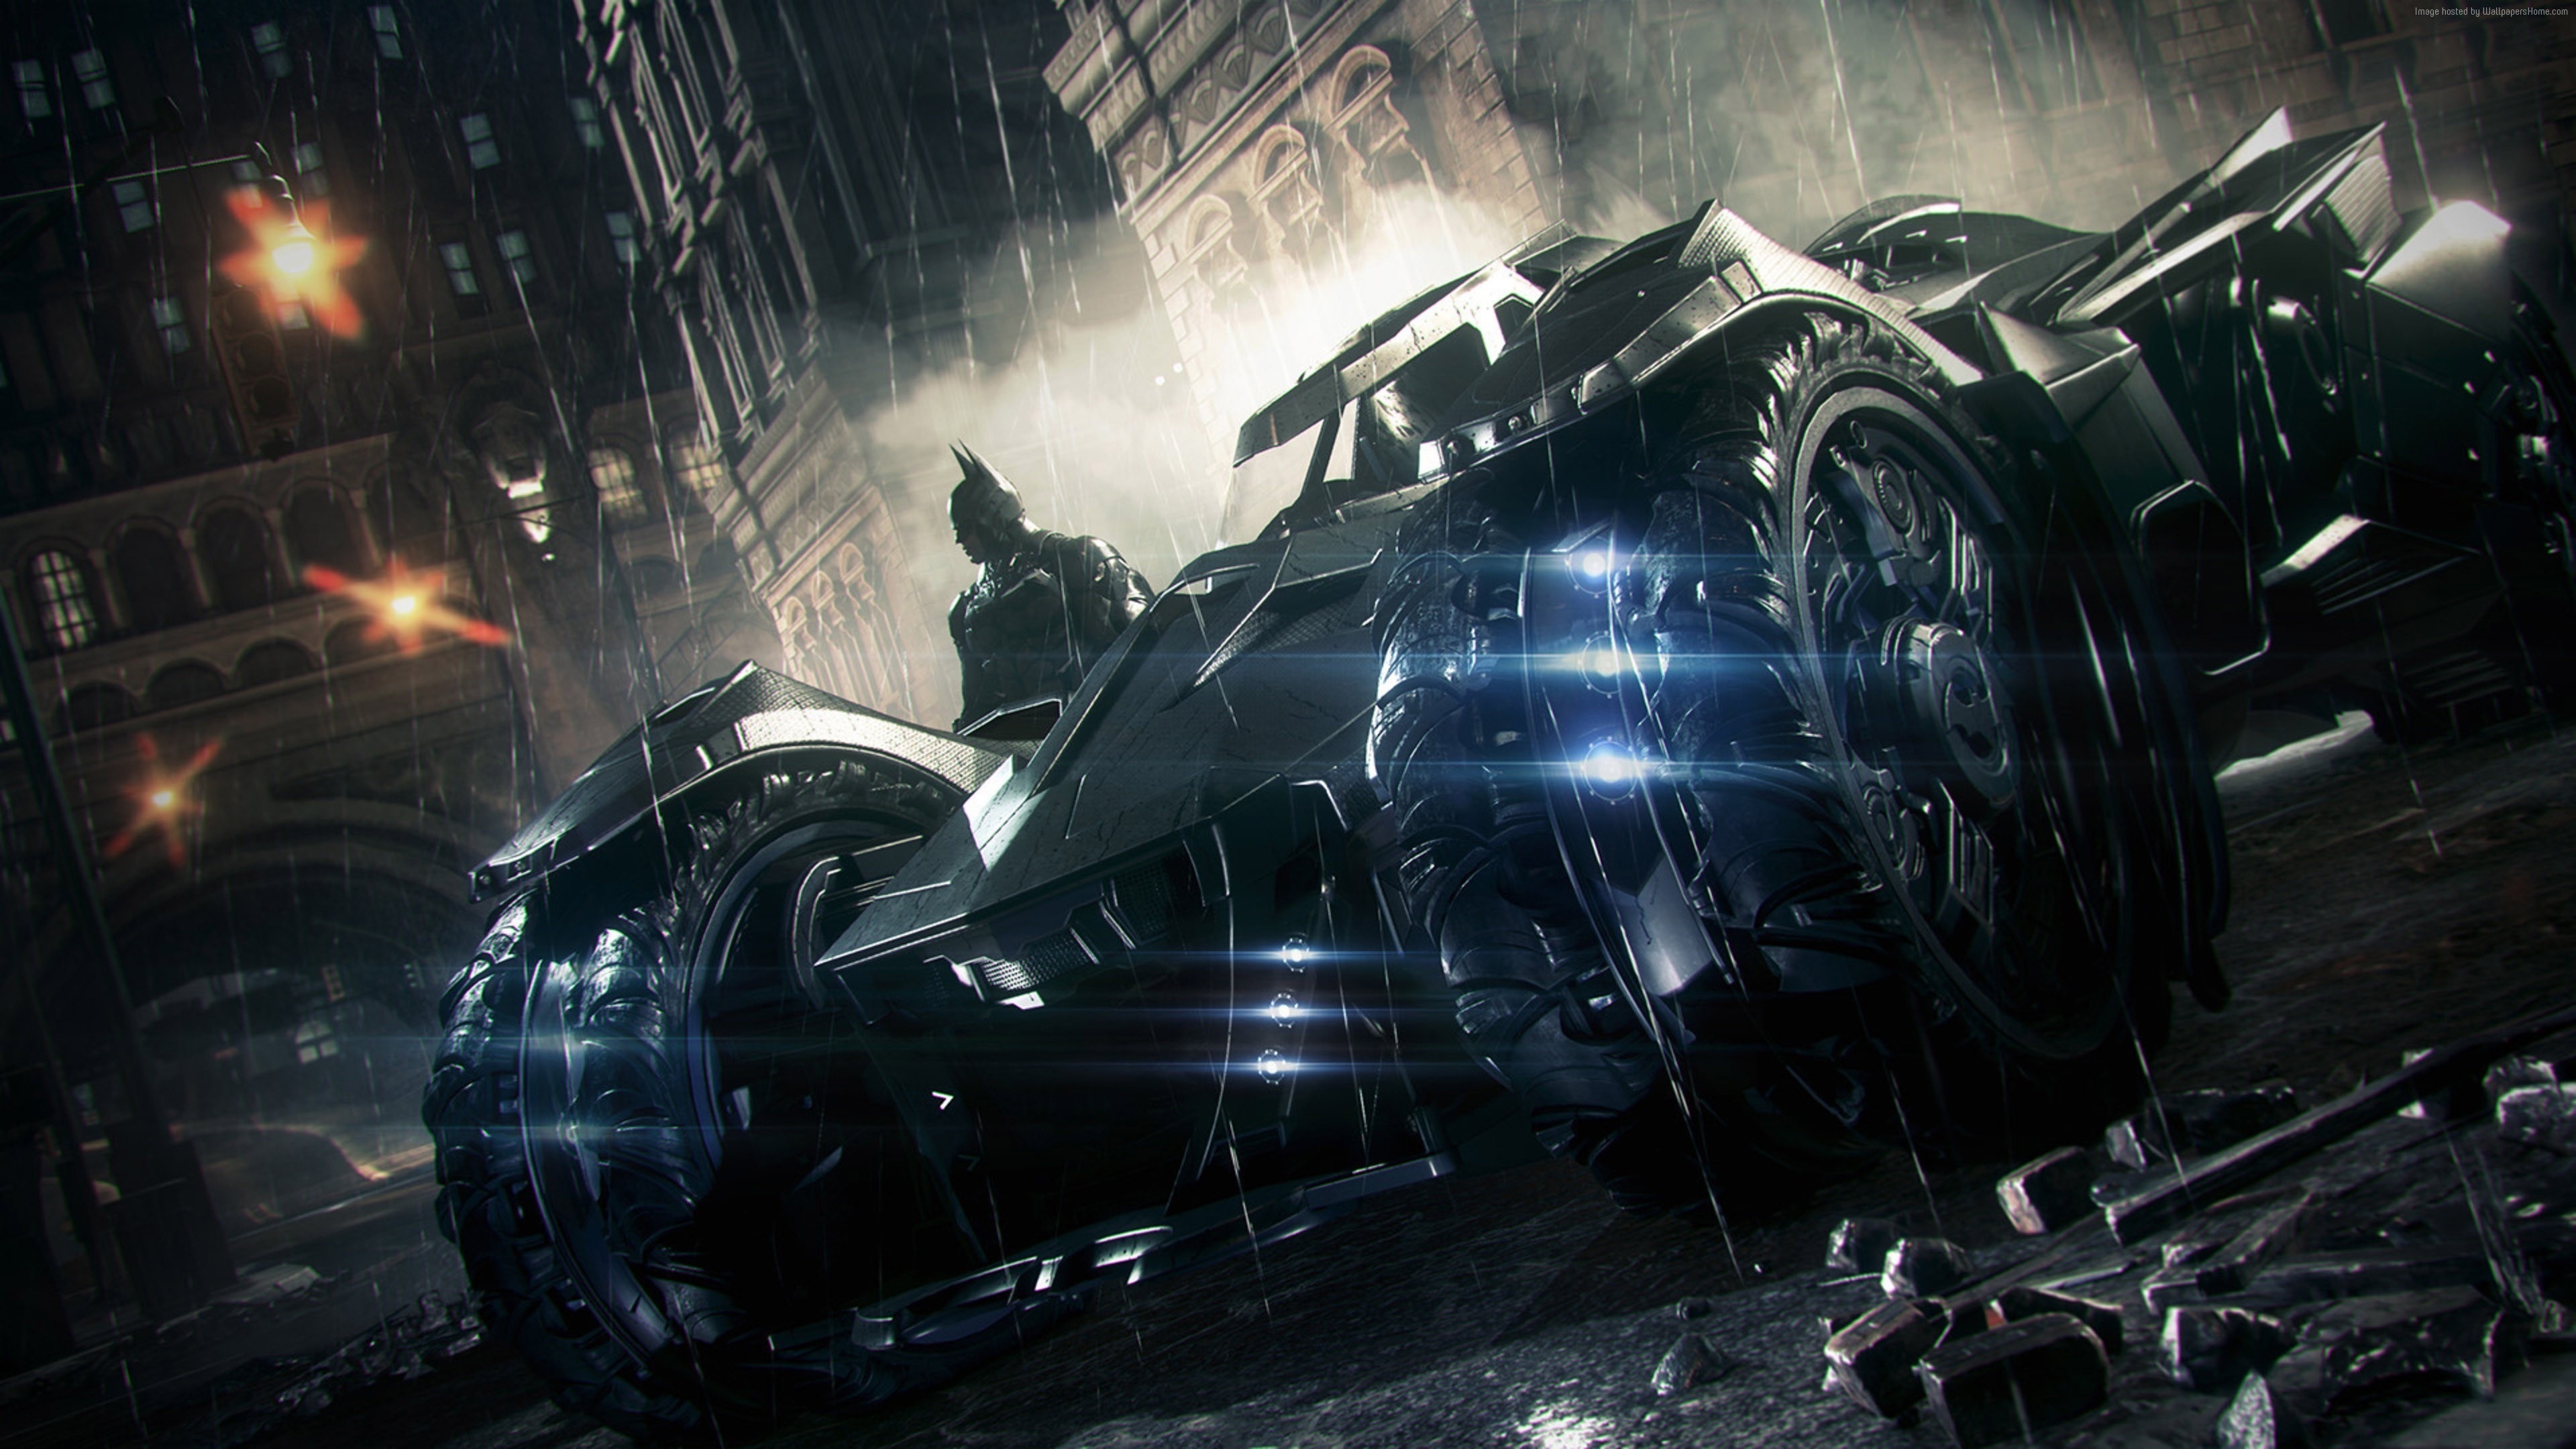 Batman Arkham Knight 3 Car for 3840 x 2160 Ultra HD resolution